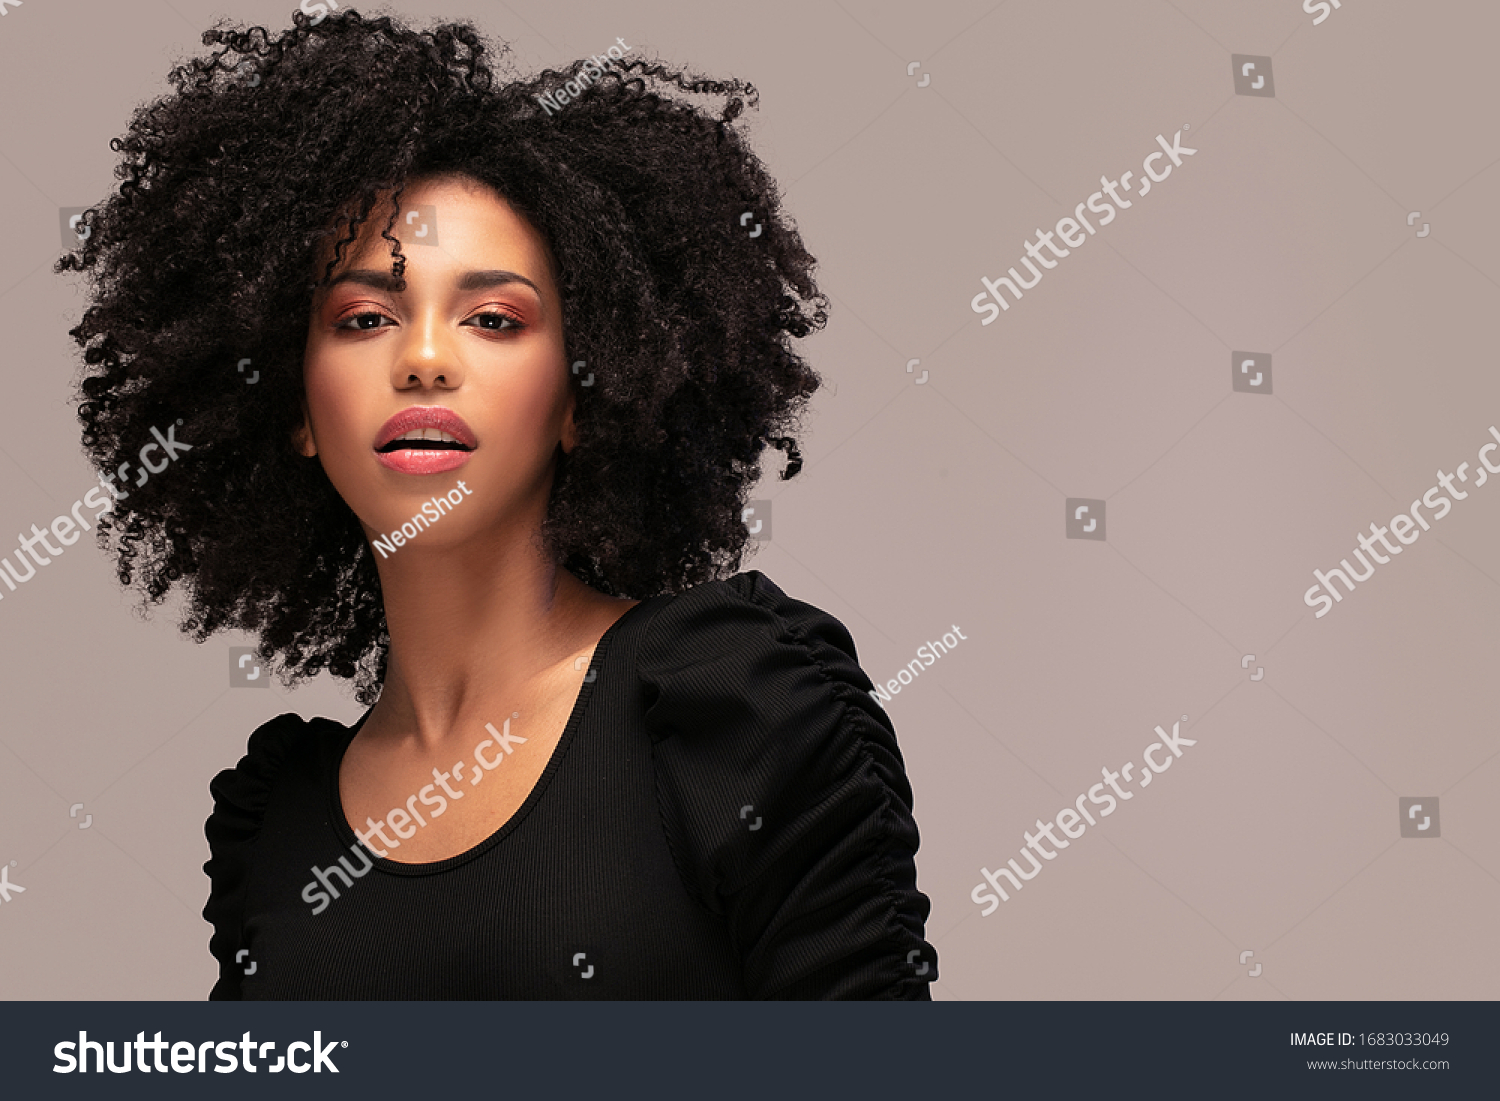 カメラを見る美しいアフリカ系アメリカ人の女性 アフロの髪型の明るい若い女性のポートレート 巻き毛の美人 の写真素材 今すぐ編集